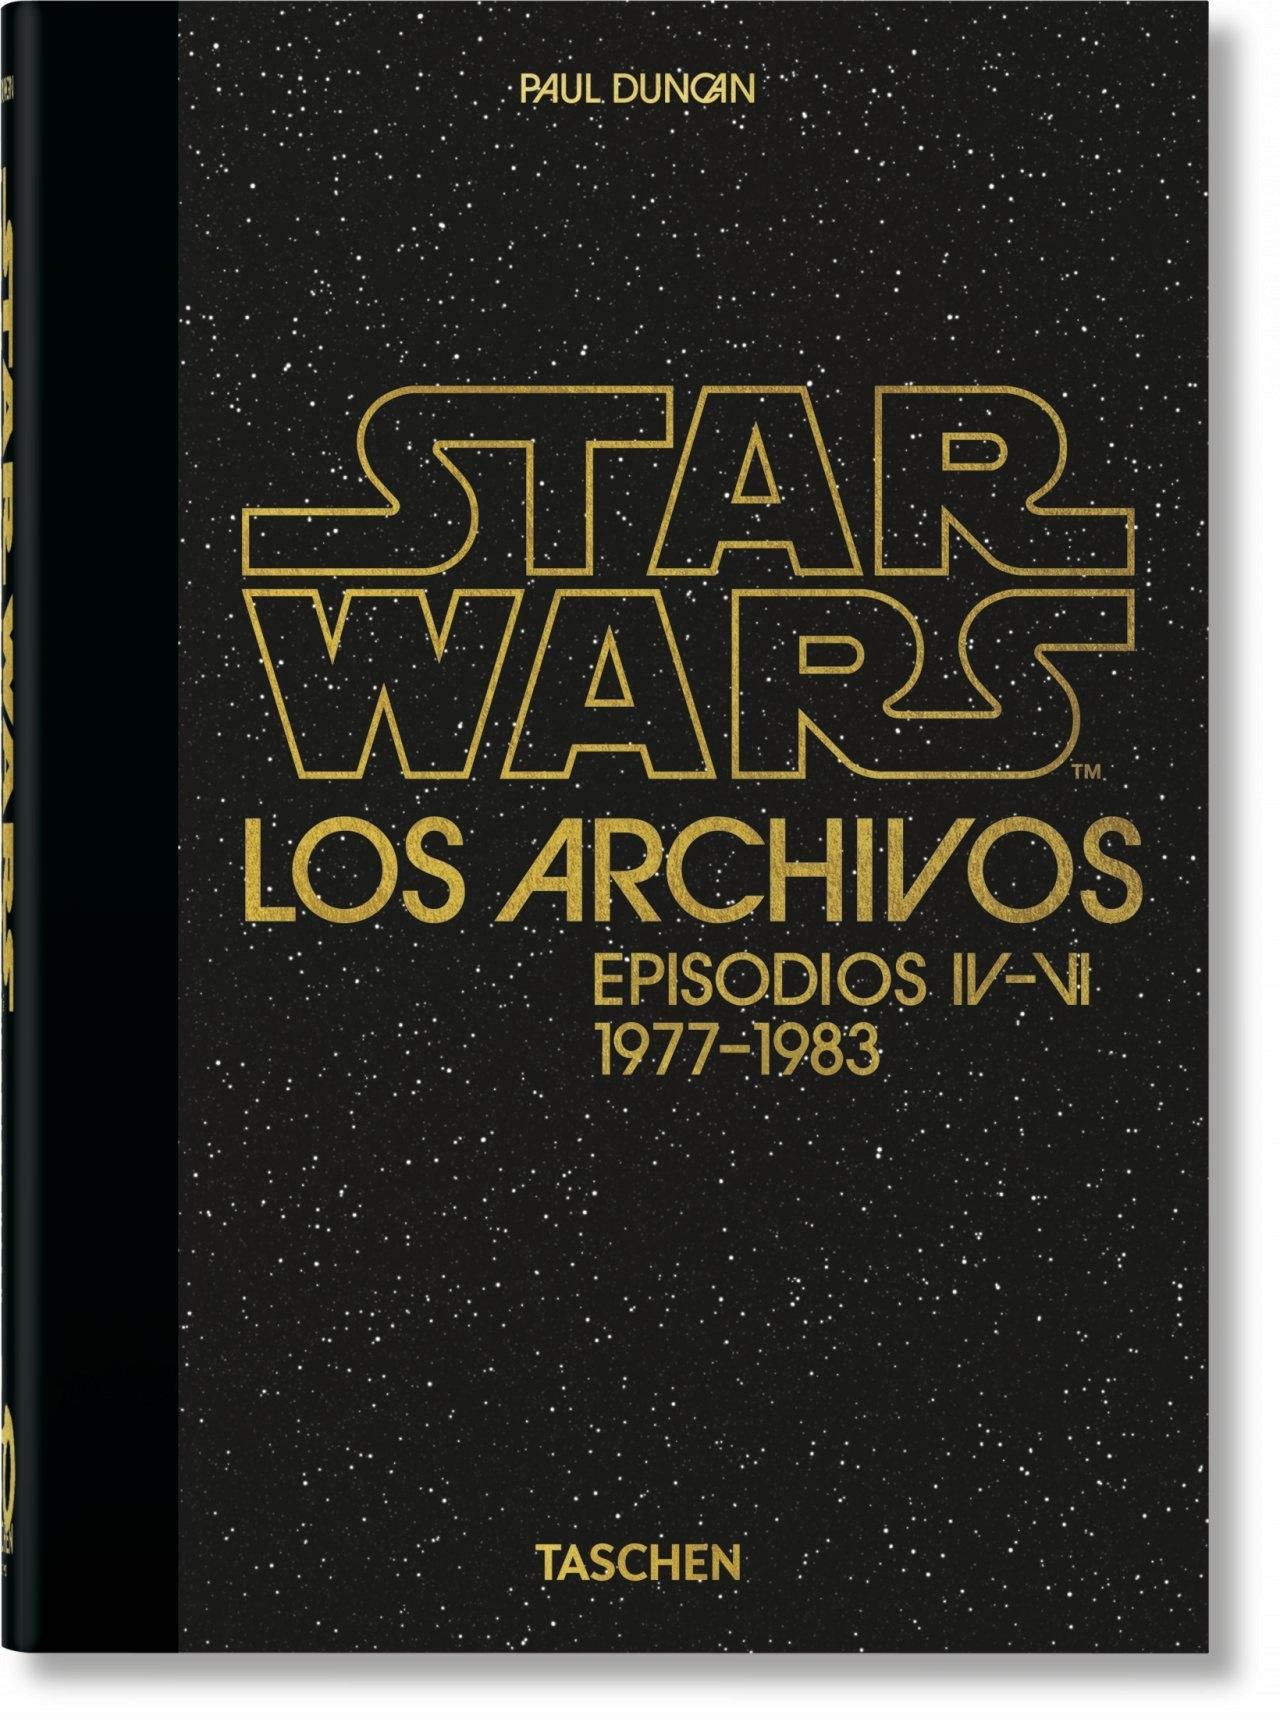  STAR WARS.  LOS ARCHIVOS EPISODIOS IV - VI 1977-1983 40TH ANNIVERSARY EDITION